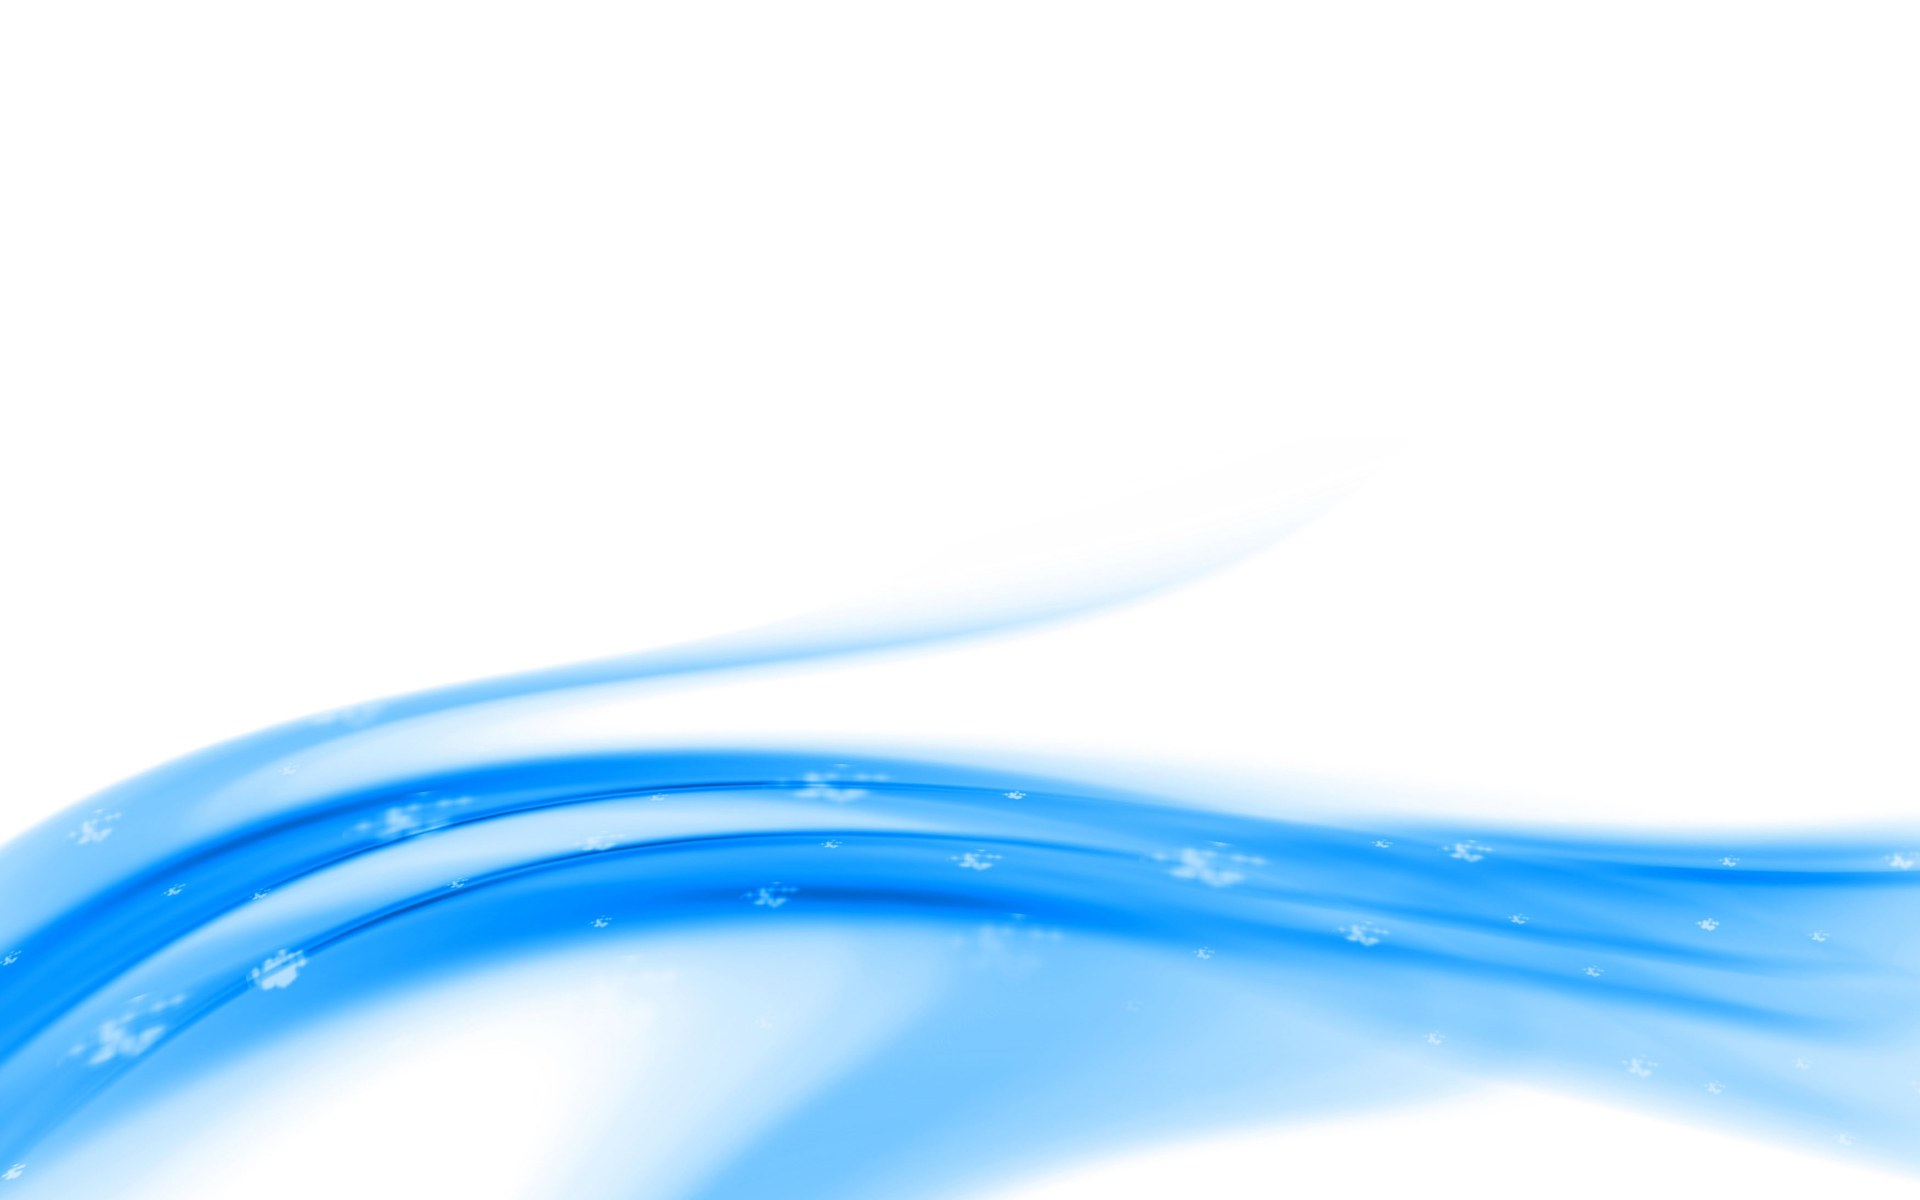 壁纸1920x1200 蓝色系 抽象蓝色CG壁纸 1920 1200壁纸 蓝色系-蓝调主题抽象CG背景壁纸 蓝色系-蓝调主题抽象CG背景图片 蓝色系-蓝调主题抽象CG背景素材 插画壁纸 插画图库 插画图片素材桌面壁纸